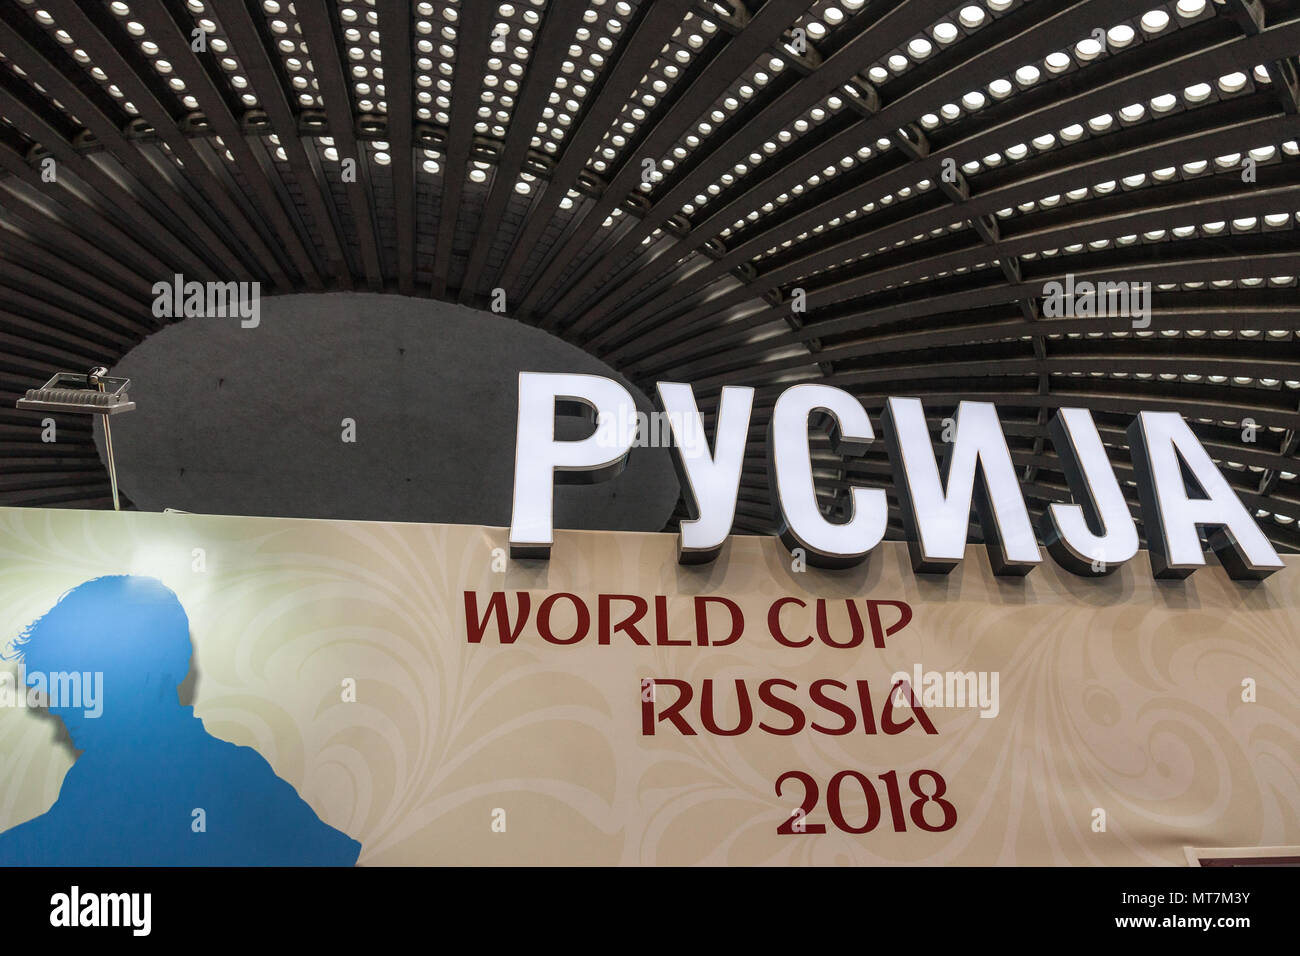 Belgrad, Serbien - Februar 23, 2018: das Logo von 2018 FUSSBALL FIFA WM in Russland in einer Messe in Serbien, das Wort Russland in Cyrill geschrieben werden Stockfoto